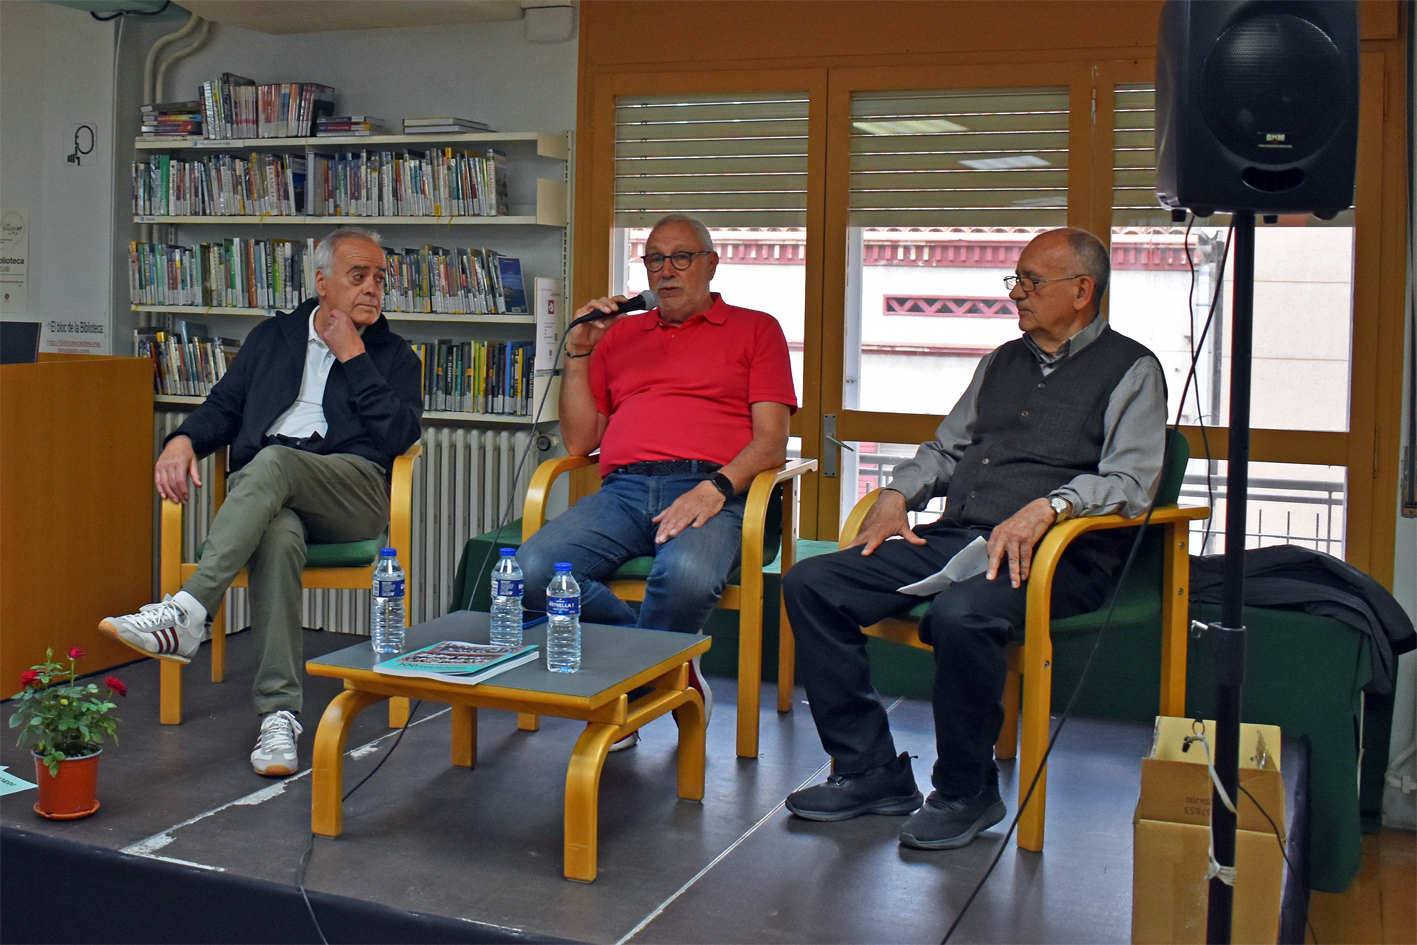 PresentaciÃ³ del llibre '100 anys de futbol a Valls de Torroella' de Demetri DomÃ­nguez, Gabriel Rovira i Joan SobrÃ© a la Biblioteca PÃºblica, dins del cicle 'Per Sant Jordi, llibres de casa'.